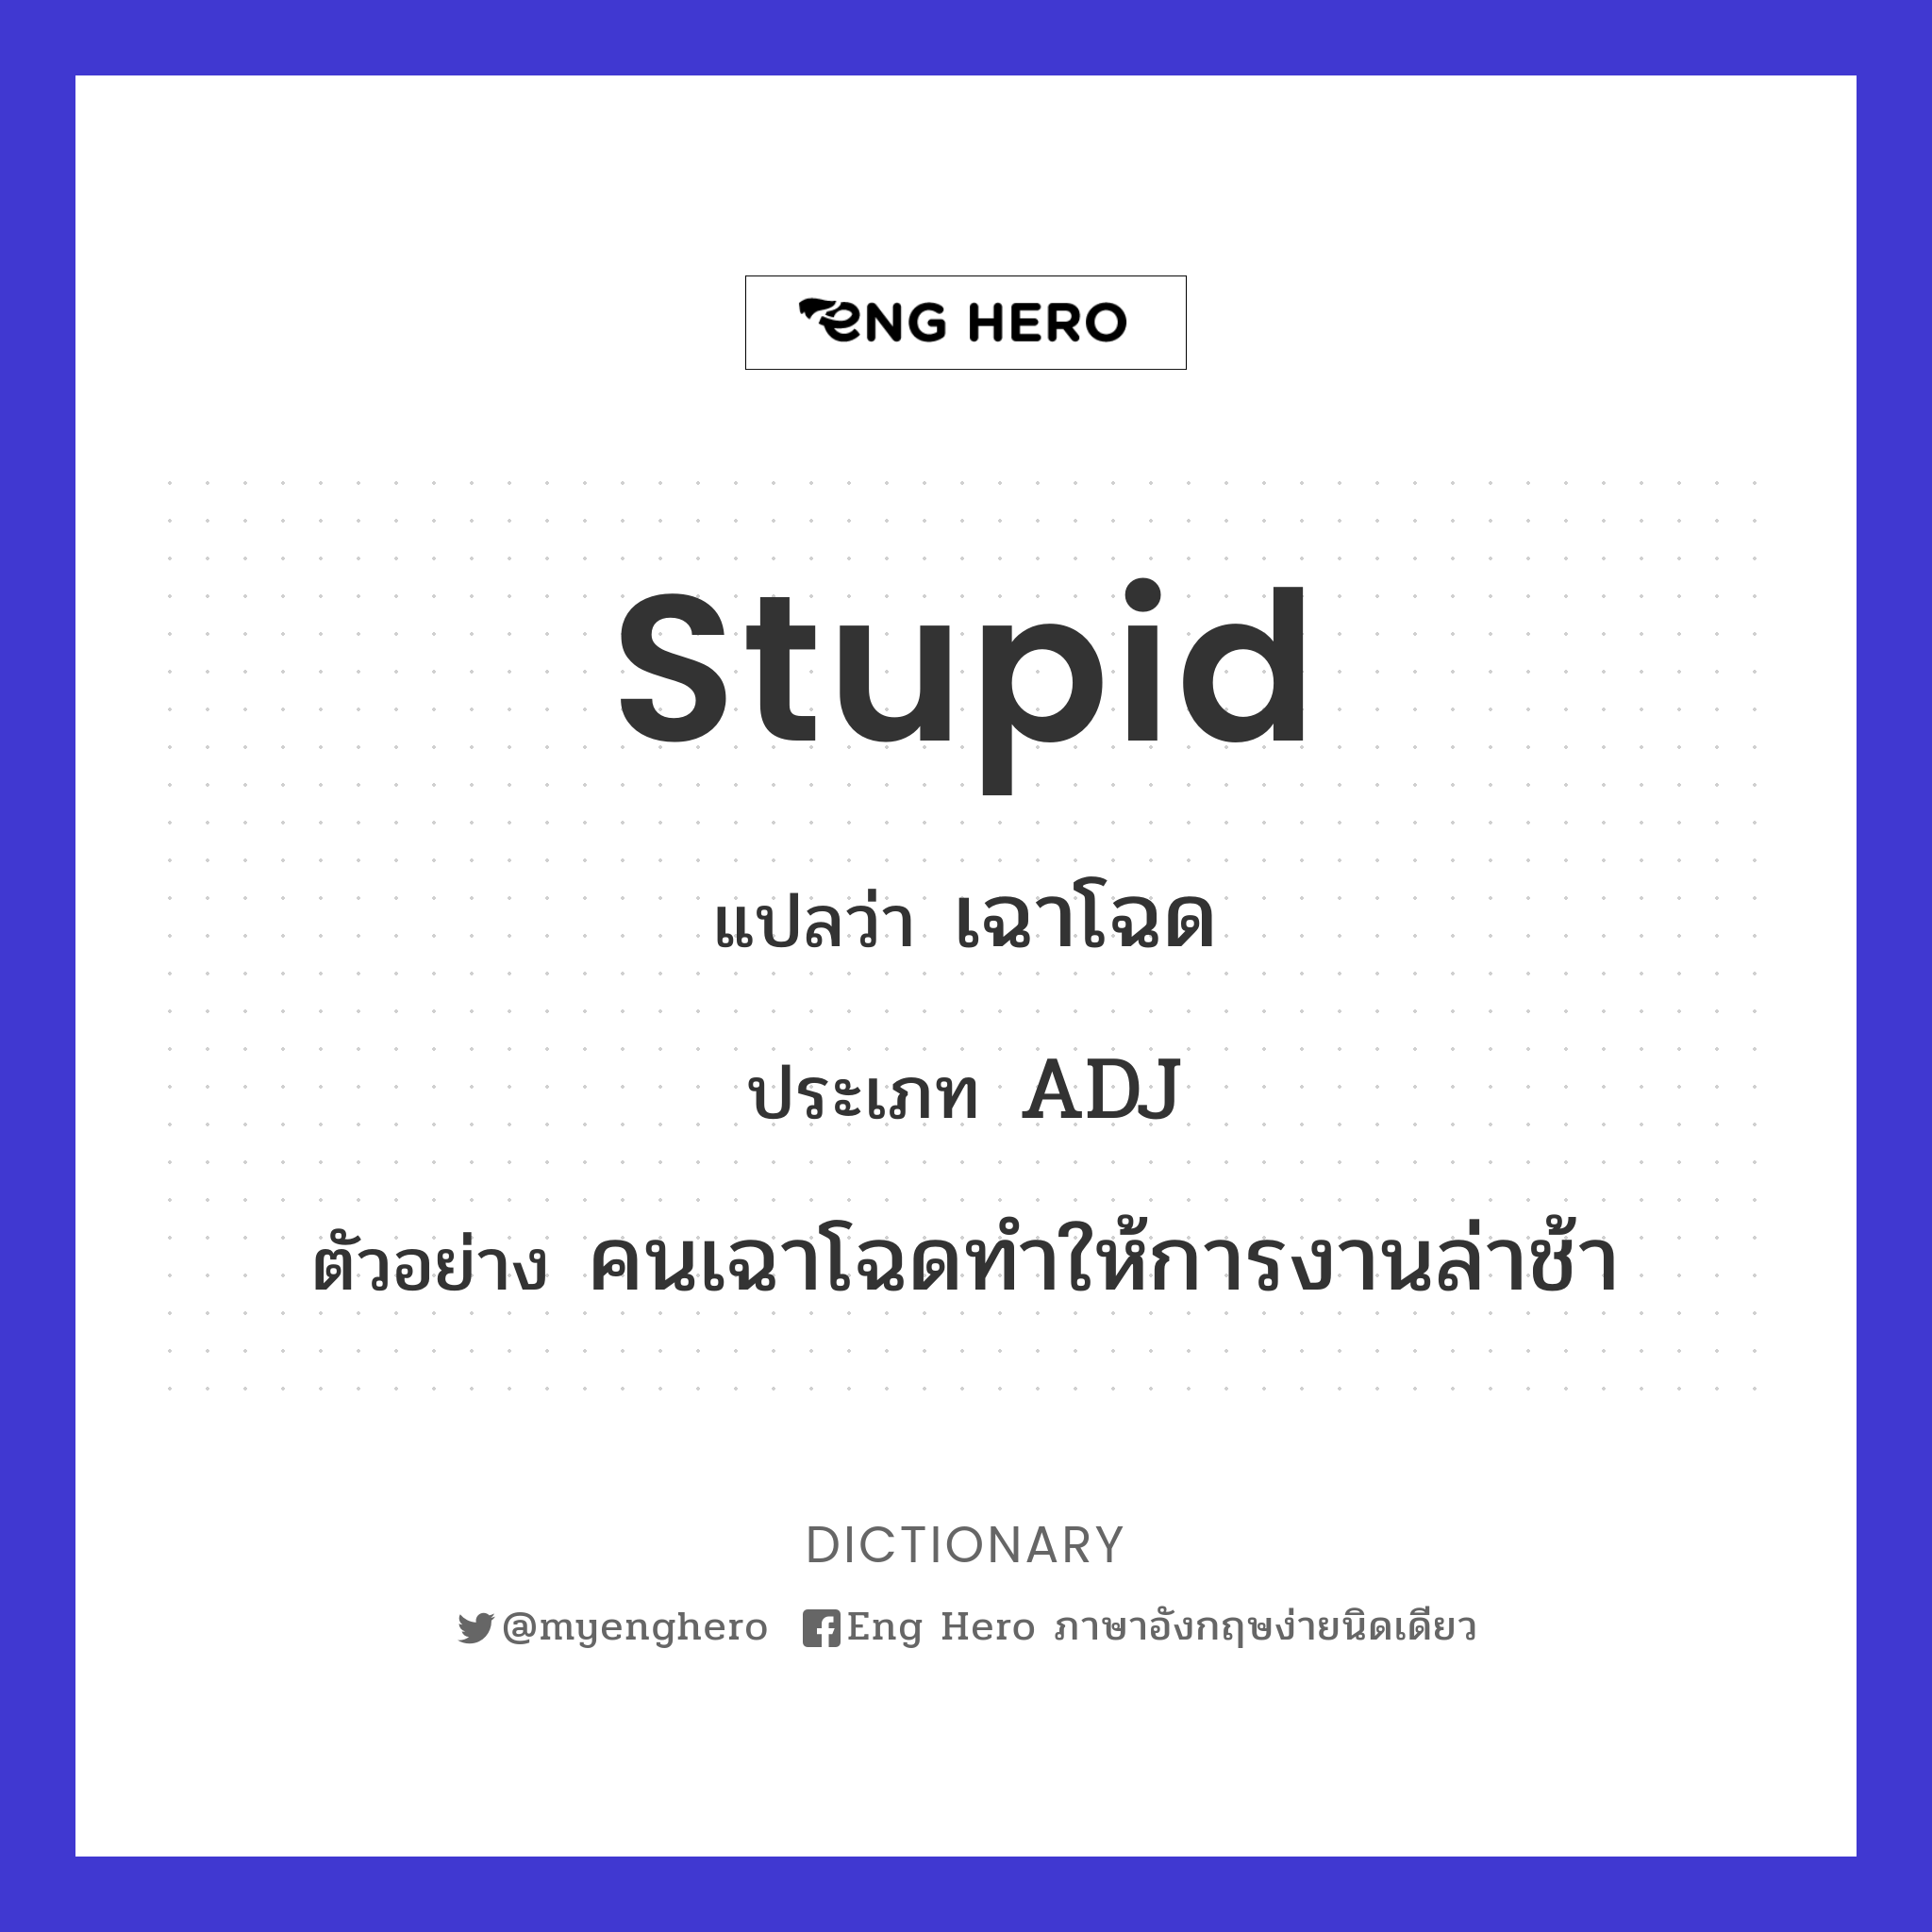 stupid